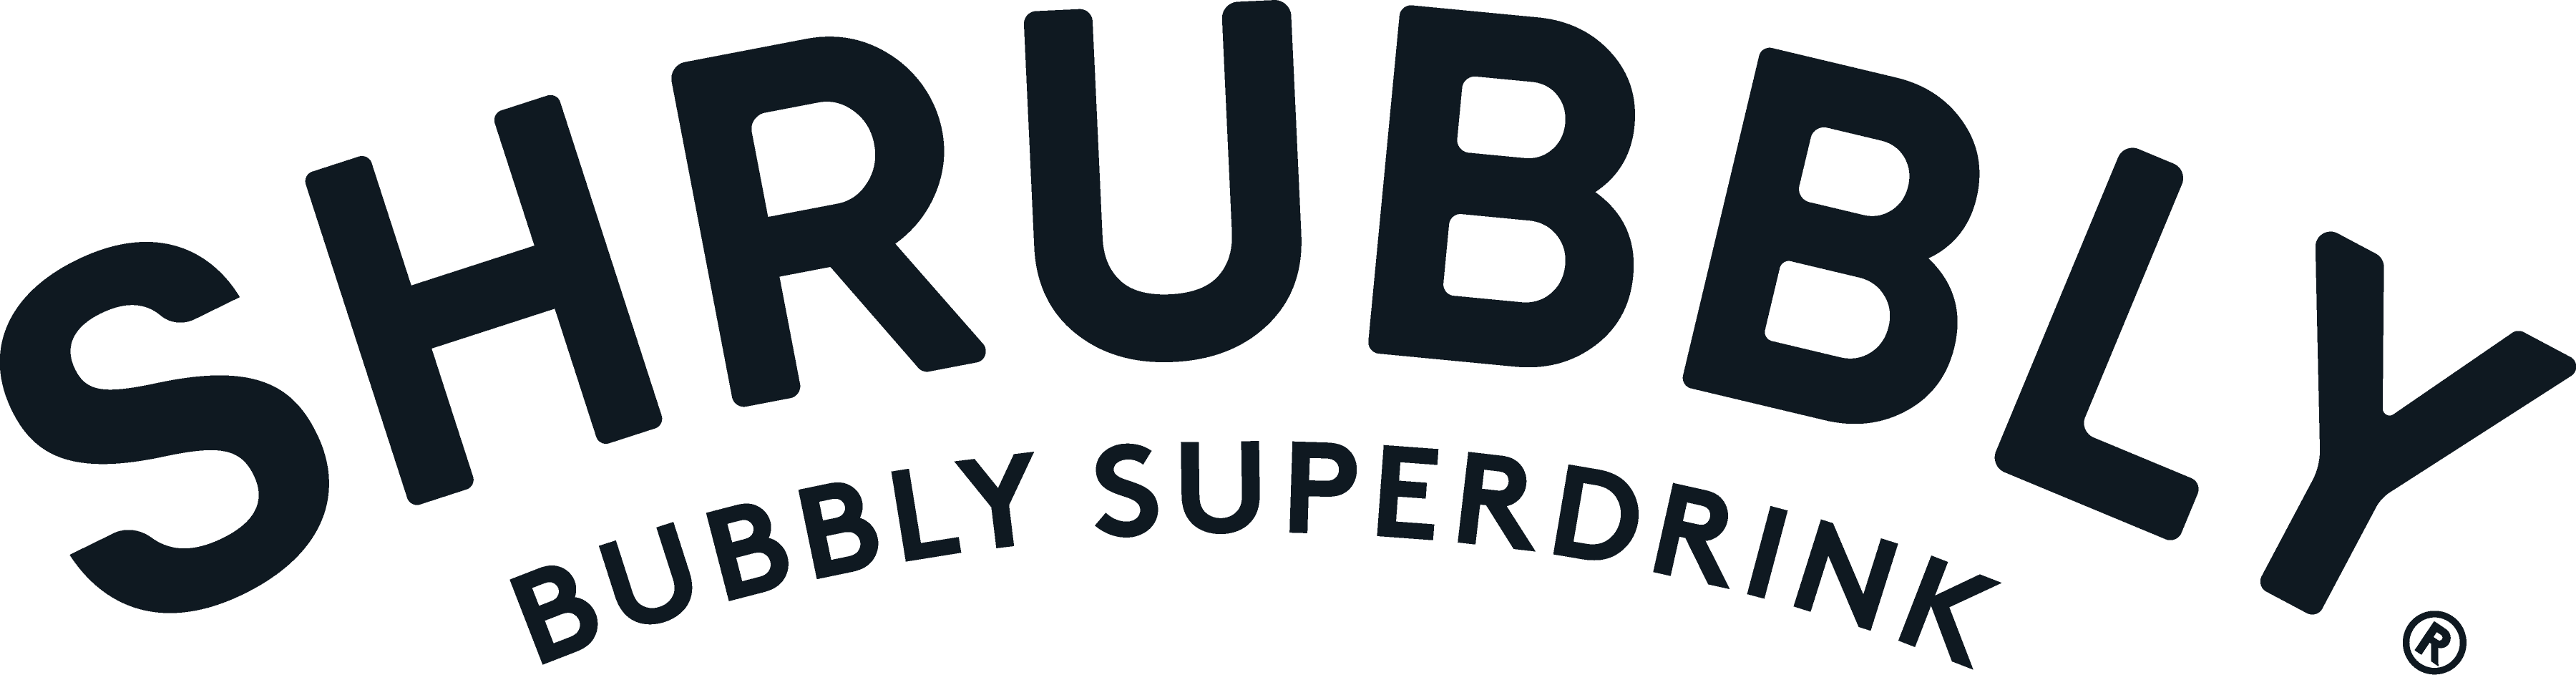 Shrubbly bubbly superdrink